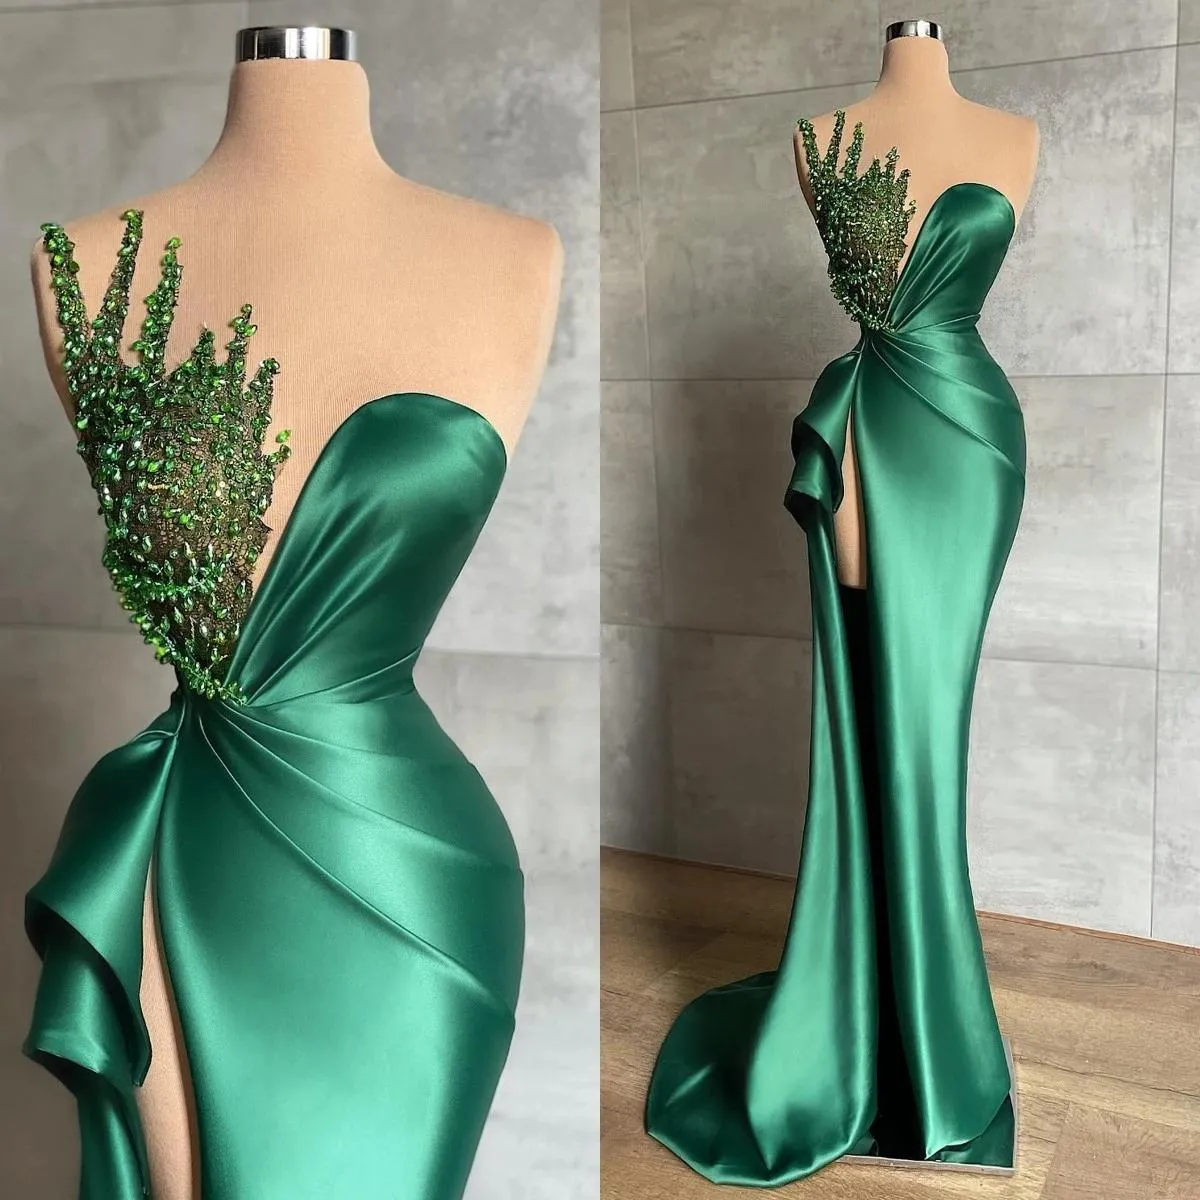 Avcı Yeşil Mermaid Gelinlik Modelleri Afrikalı Kadınlar Için Uzun Seksi Yan Yüksek Bölünmüş Parlak Boncuk Kolsuz Örgün Abiye giyim